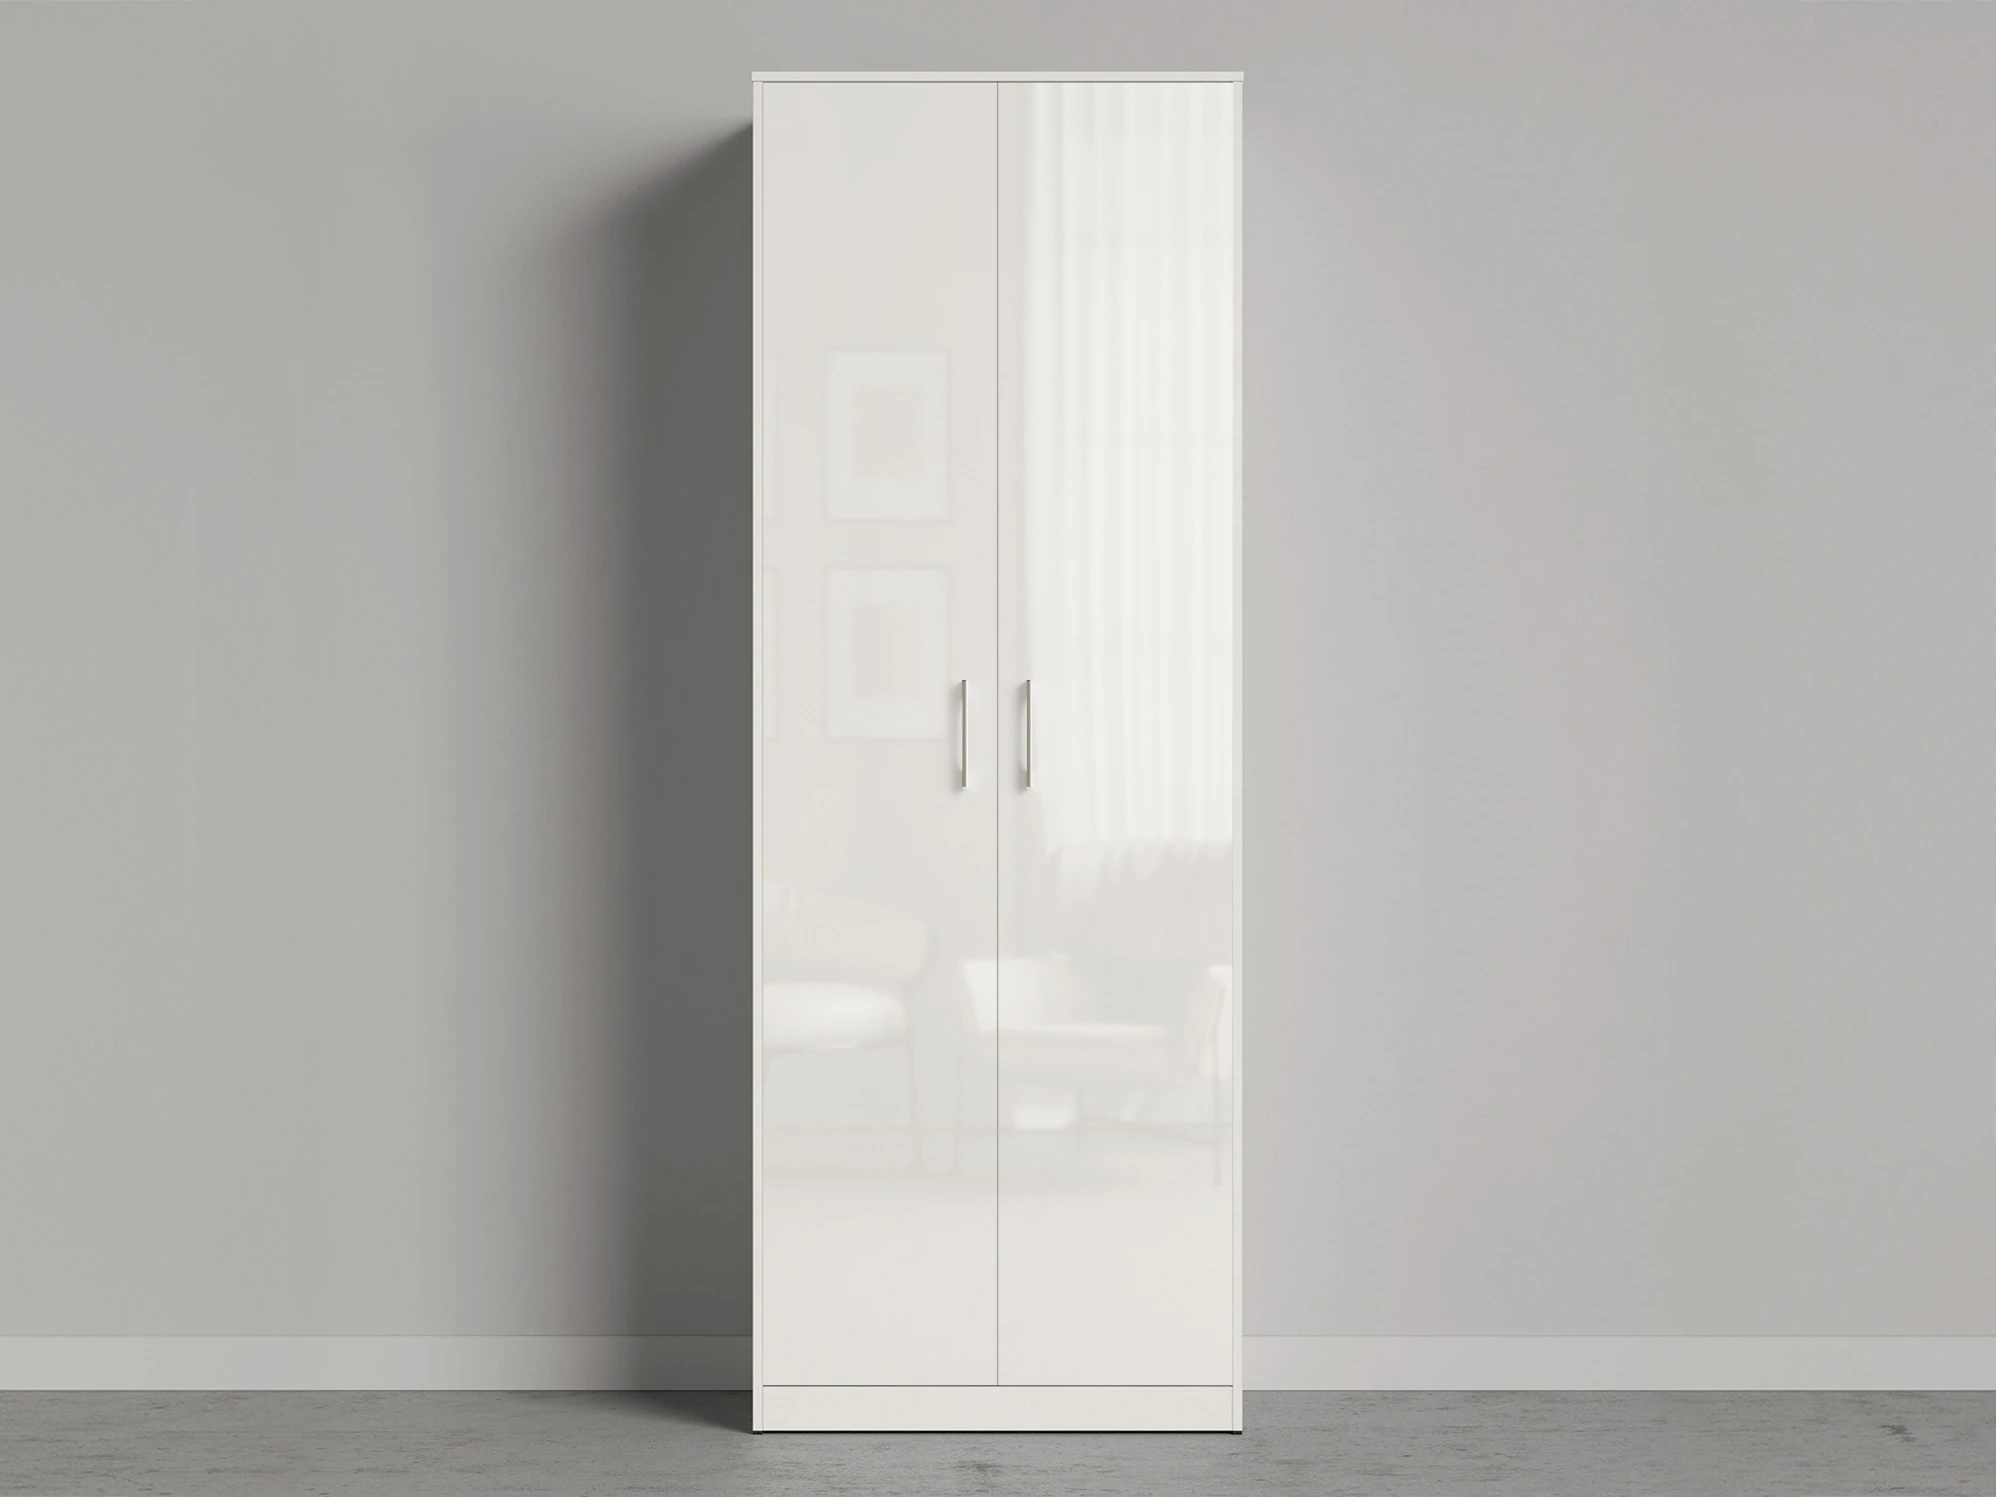 1 Closet 80x200 cm (Standard 45 cm depth) White / White Gloss